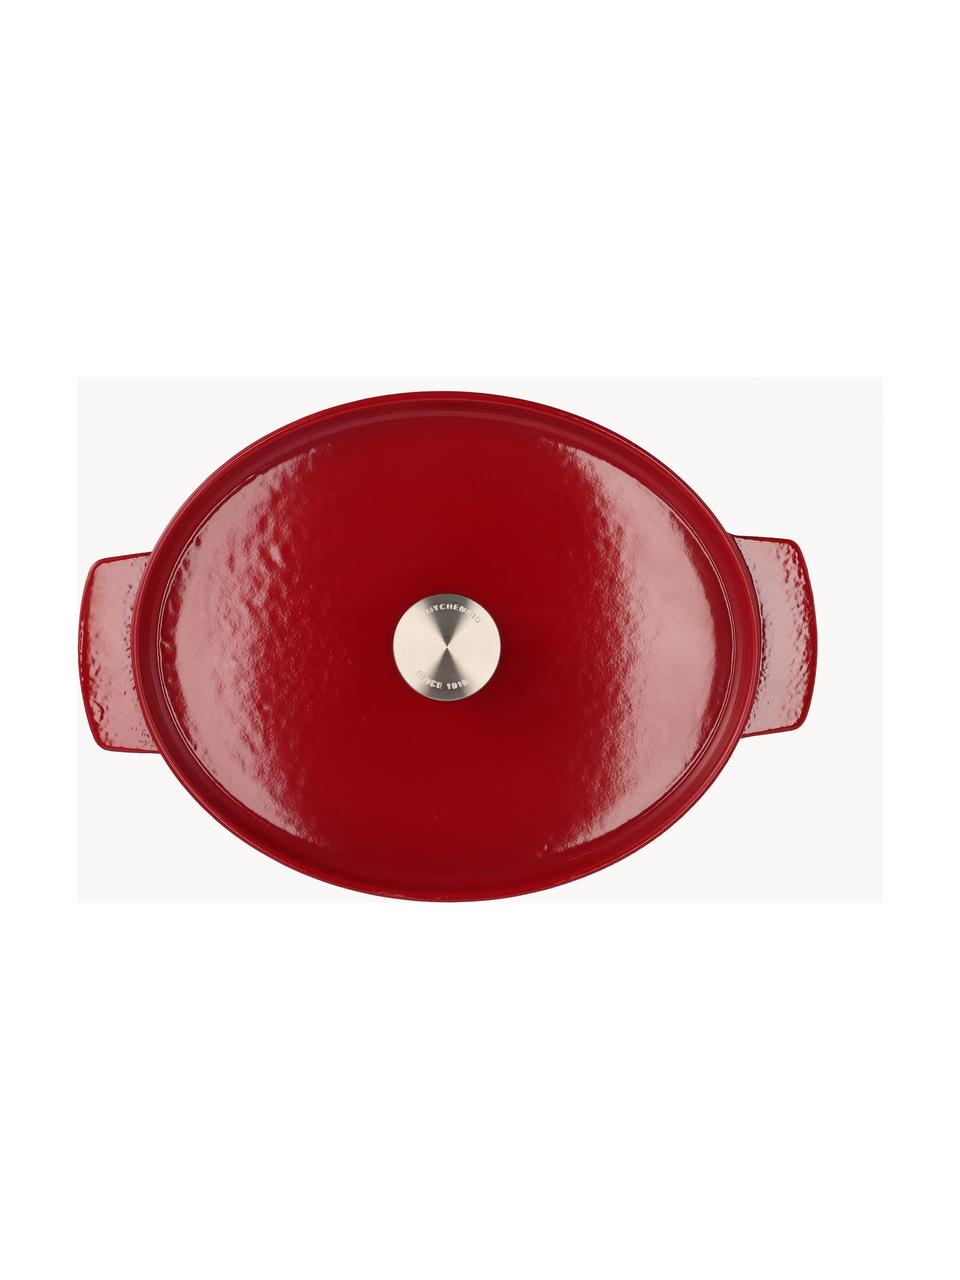 Ovale braadpan Doelle met antiaanbaklaag, Gietijzer met keramische antiaanbaklaag, Rood, L 40 cm, B 29 cm, H 16 cm